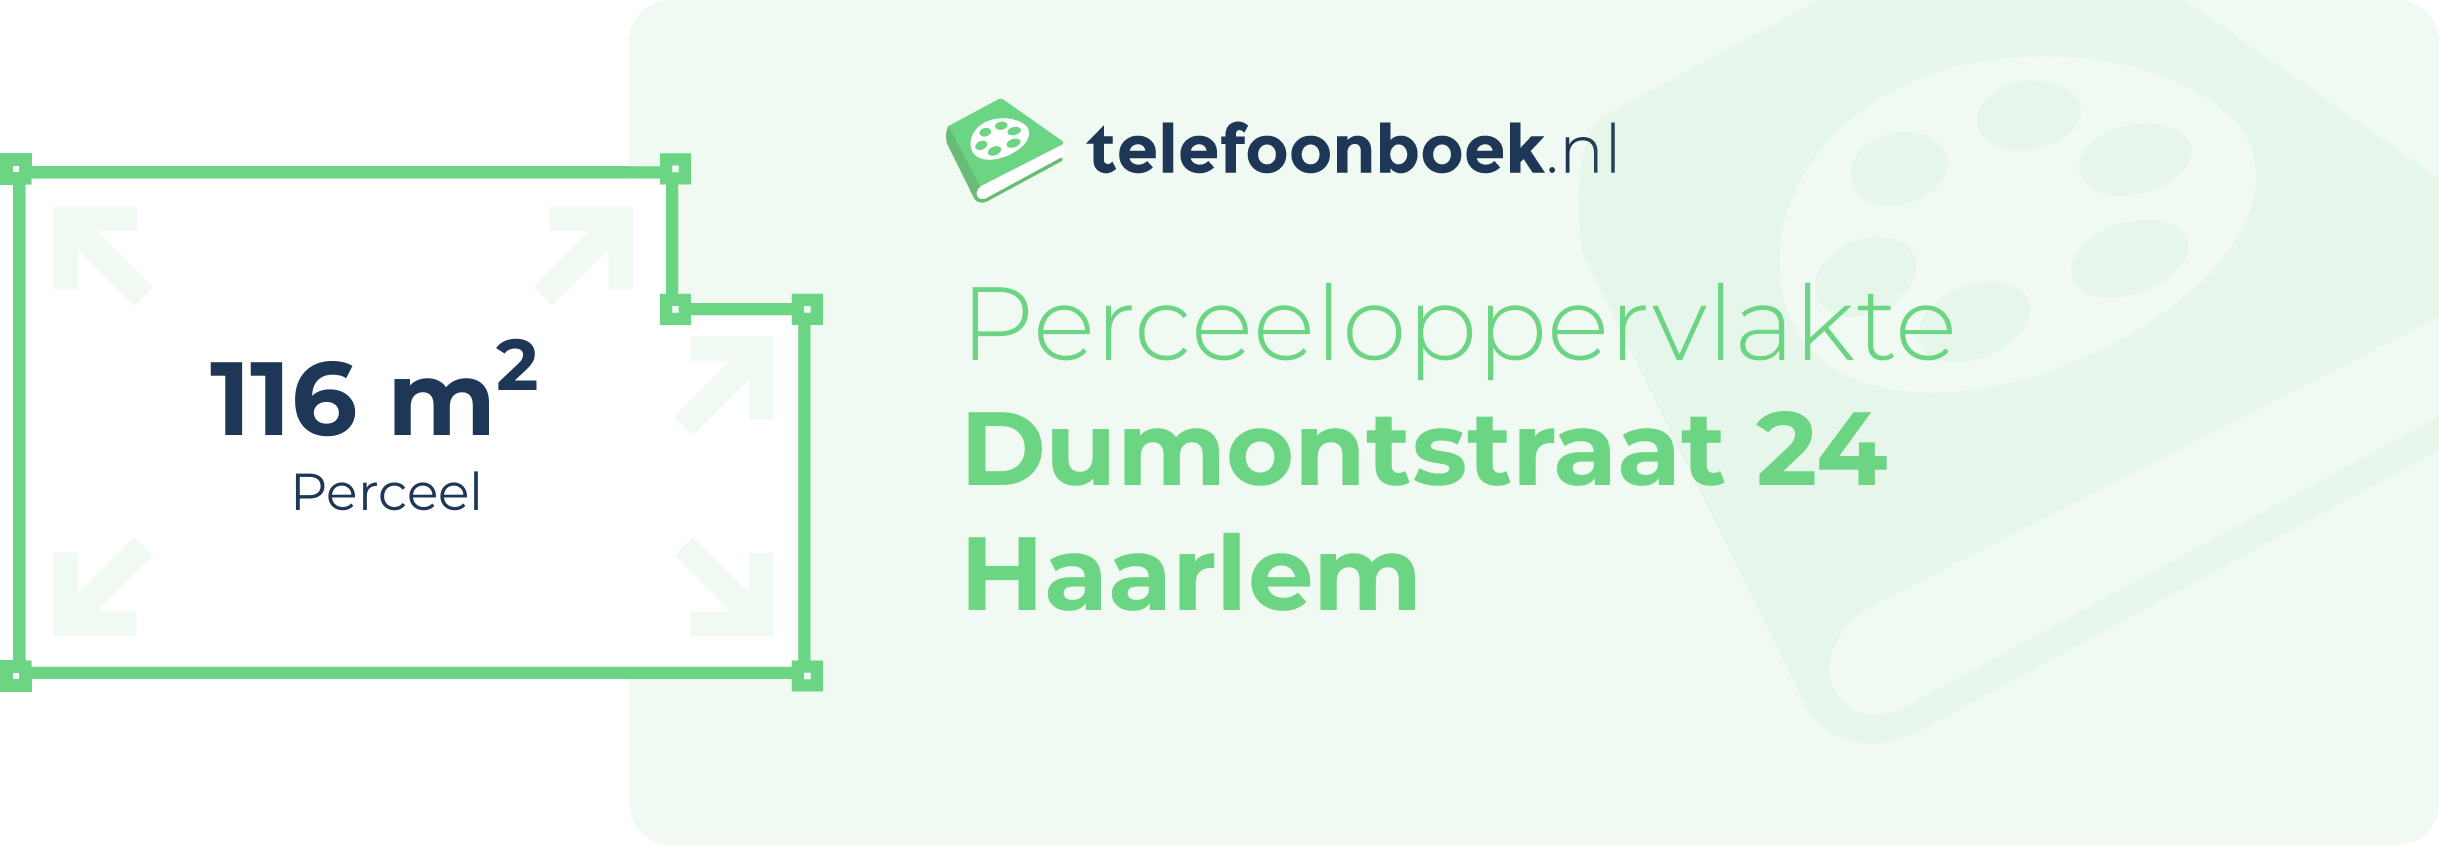 Perceeloppervlakte Dumontstraat 24 Haarlem